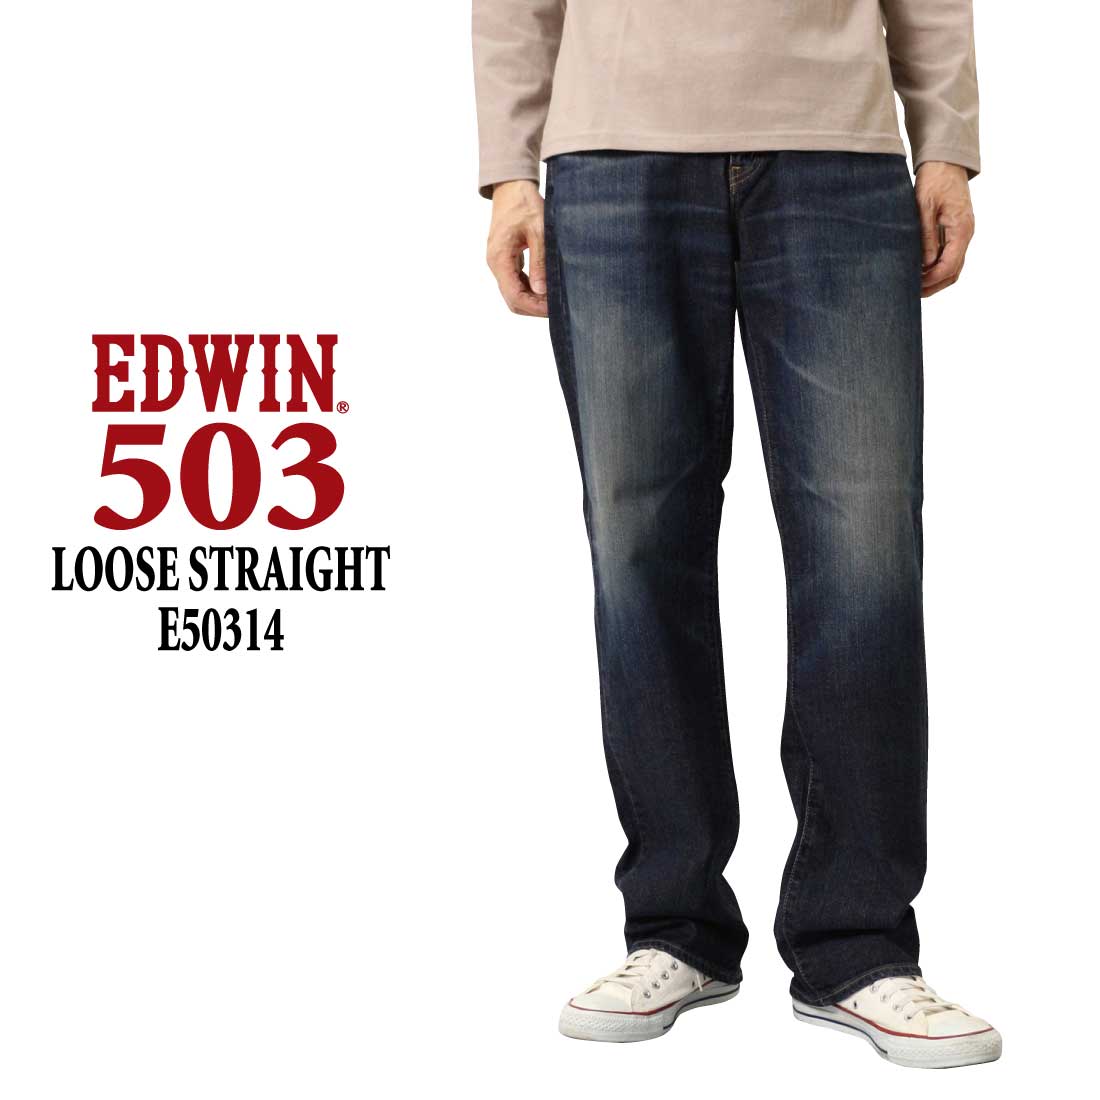 EDWIN ジーンズ 503 ルーズストレートパンツ LOOSE STRAIGHT E50314 ス...